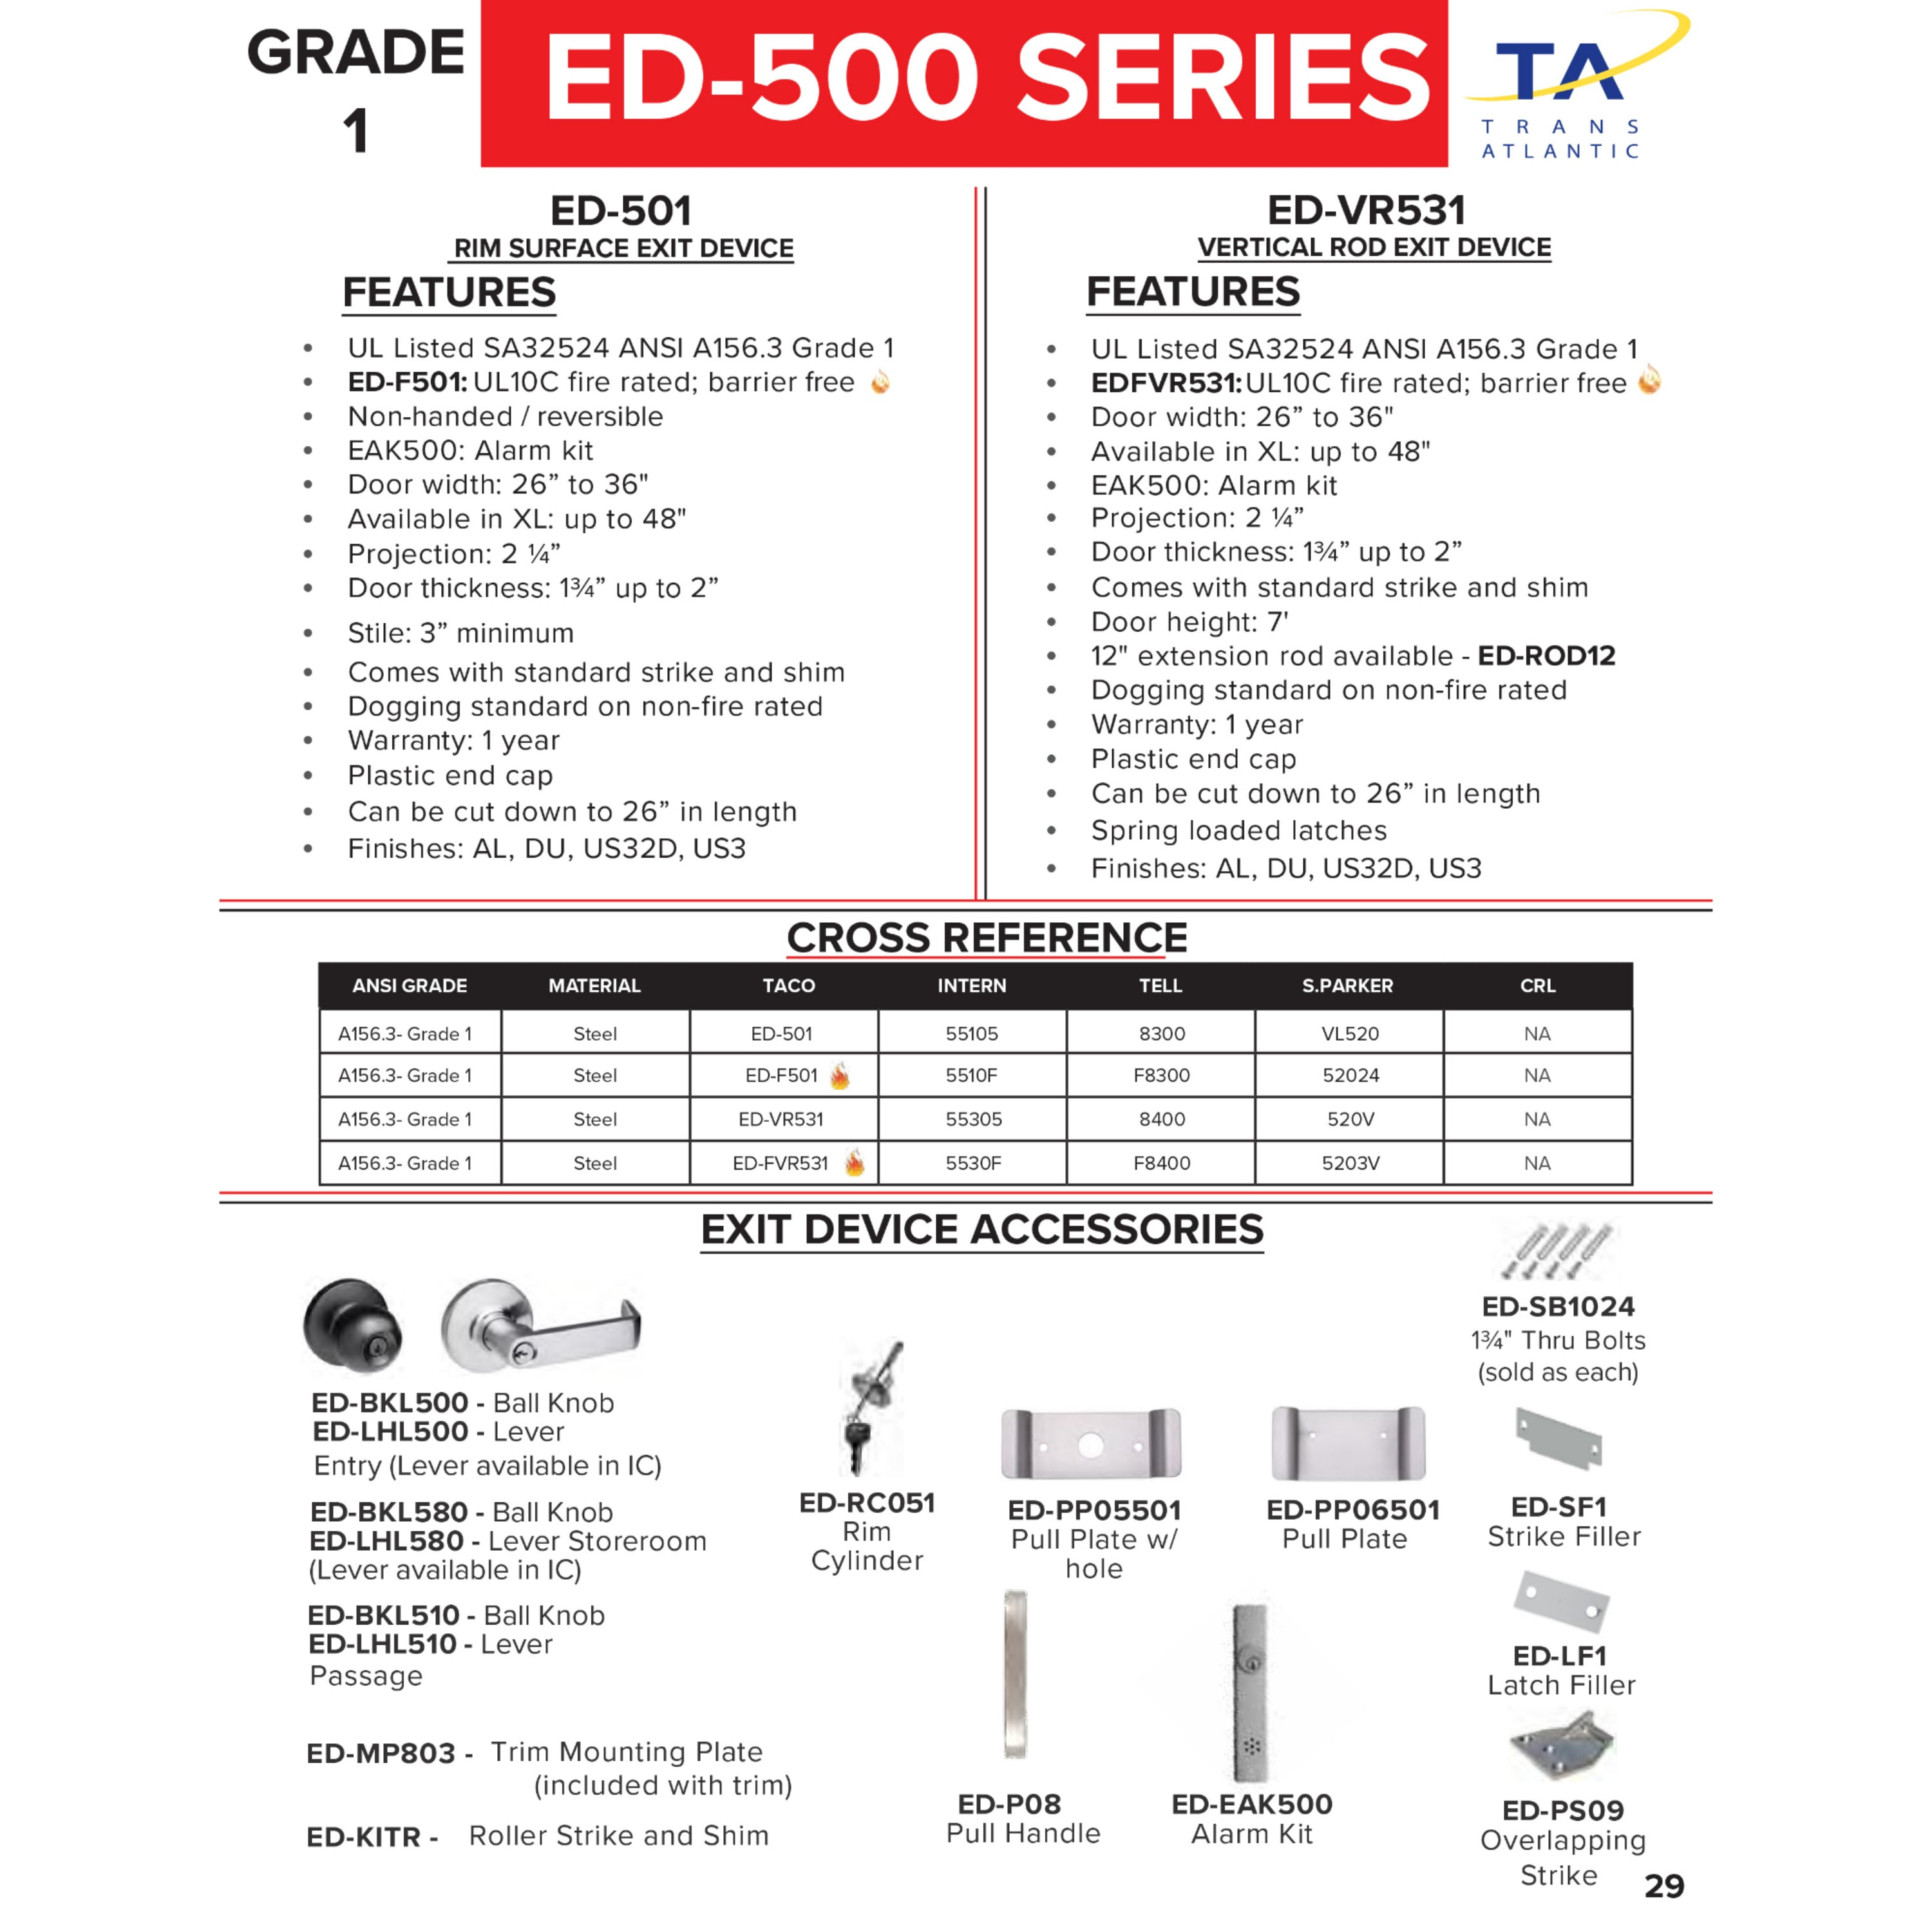 500 Series 48&quot; Commercial Rim Panic Exit Device - Grade 1 -  Pro-Edge HD